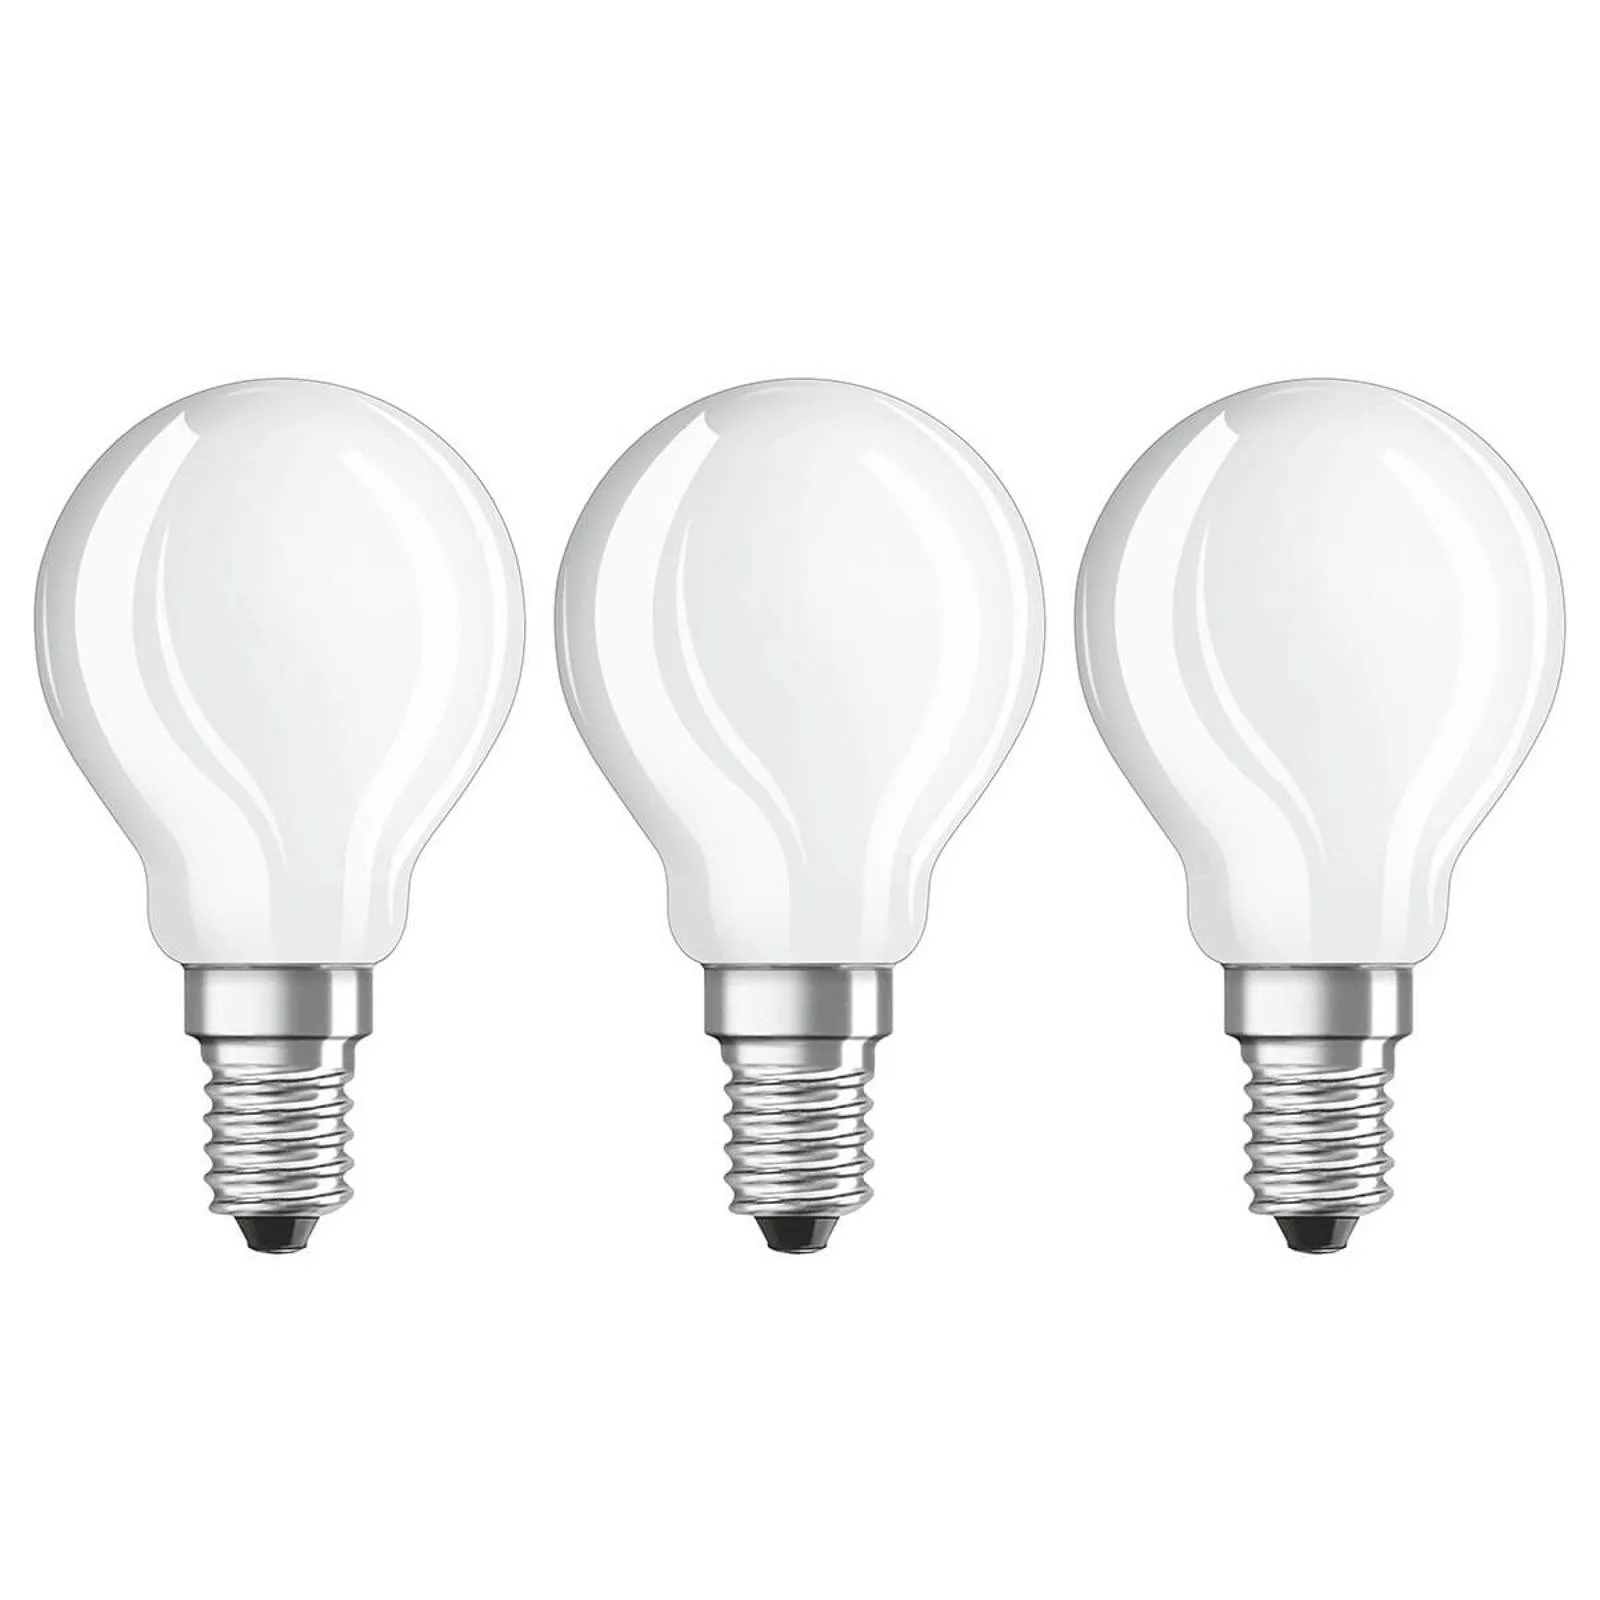 LED-Lampe E14 4W, warmweiß, 470 Lumen, 3er-Set günstig online kaufen